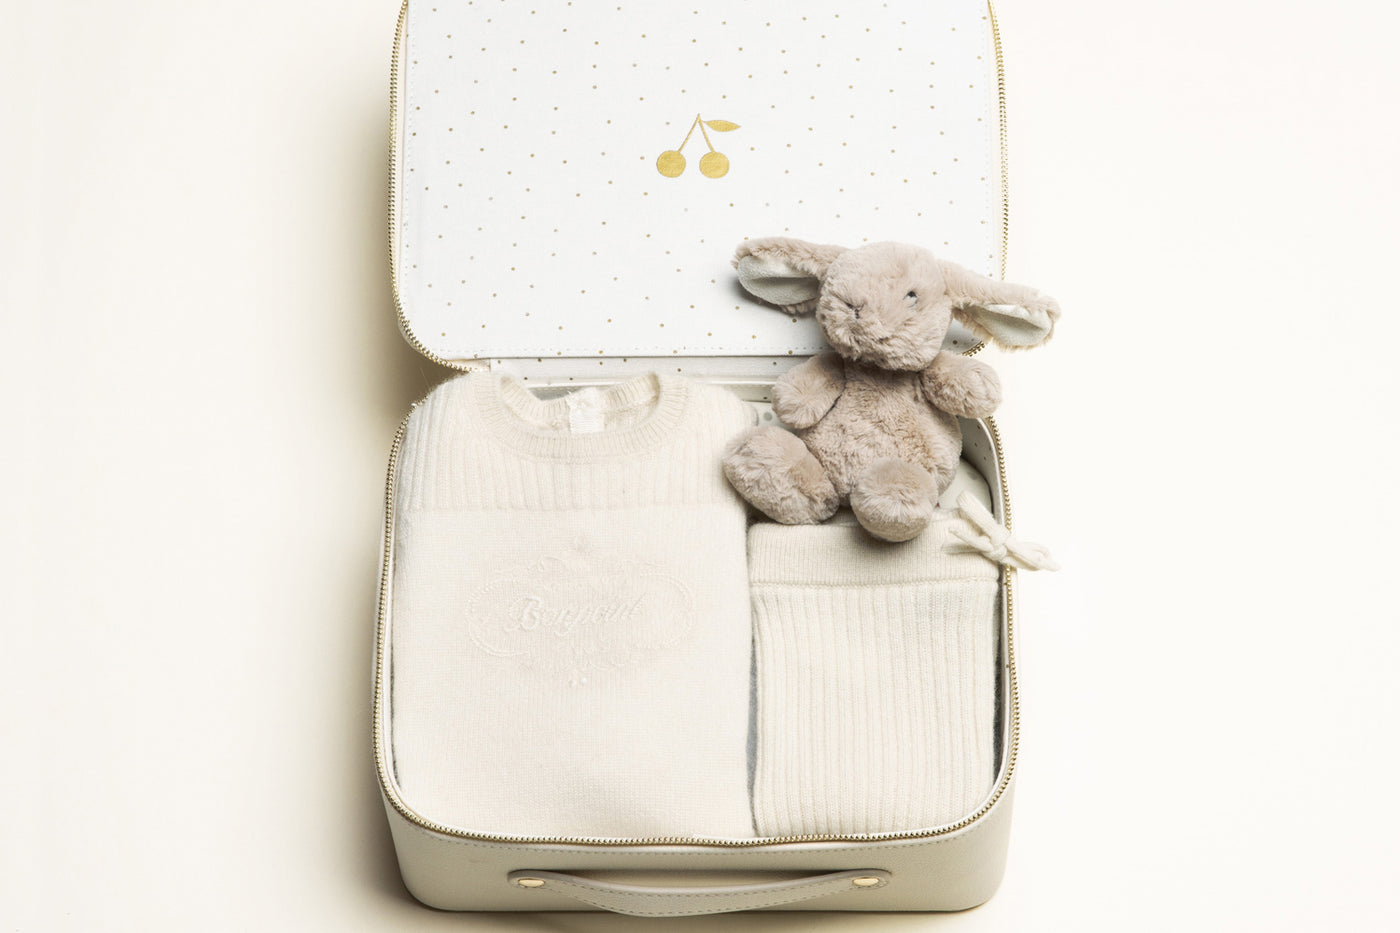 Medium unisex birth suitcase